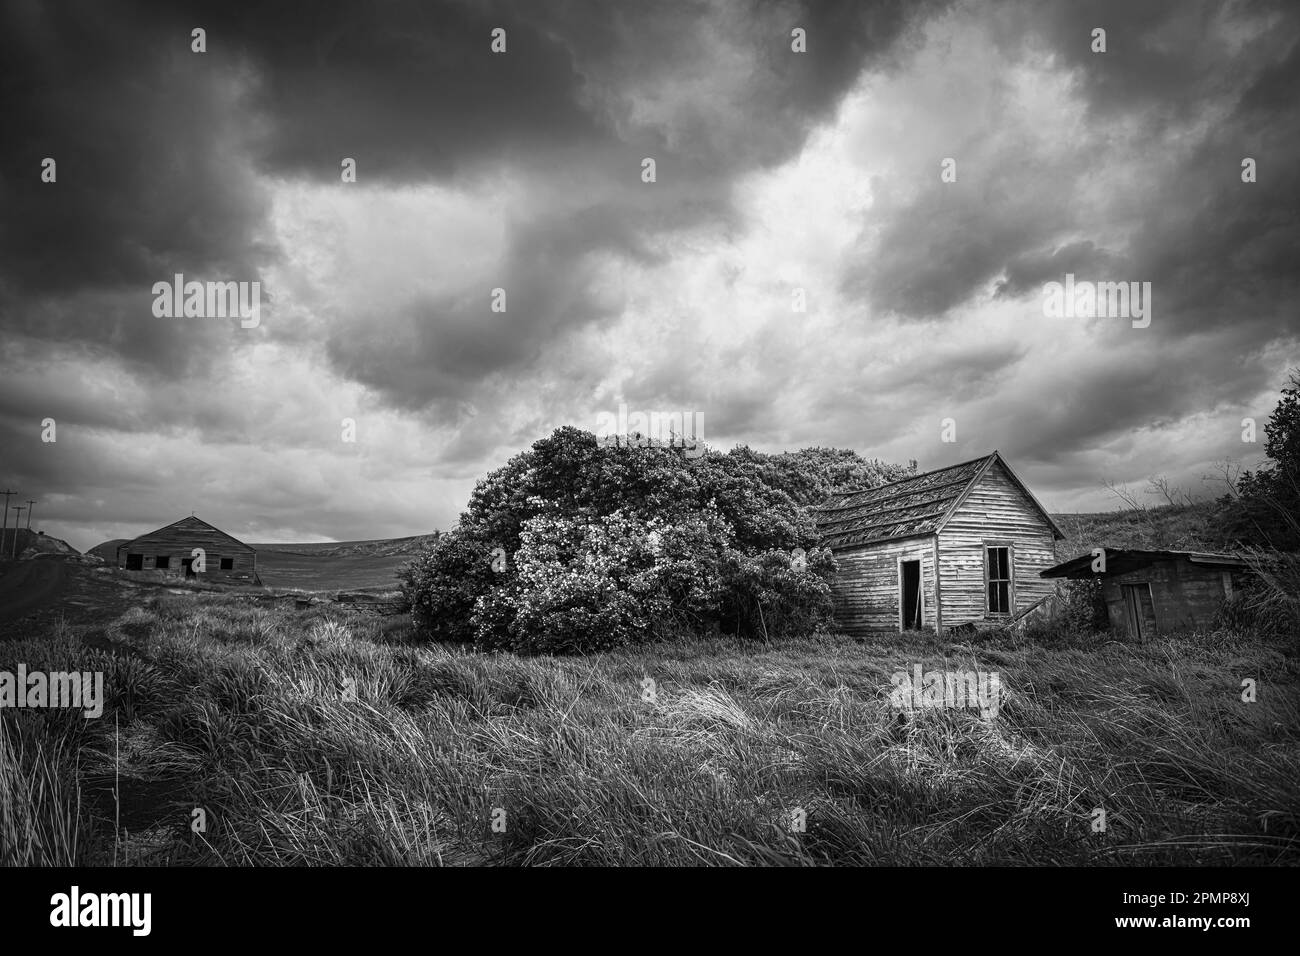 Imagen en blanco y negro de una casa vieja y espeluznante abandonada bajo nubes meteorológicas amenazantes en el este de Washington, EE.UU Foto de stock